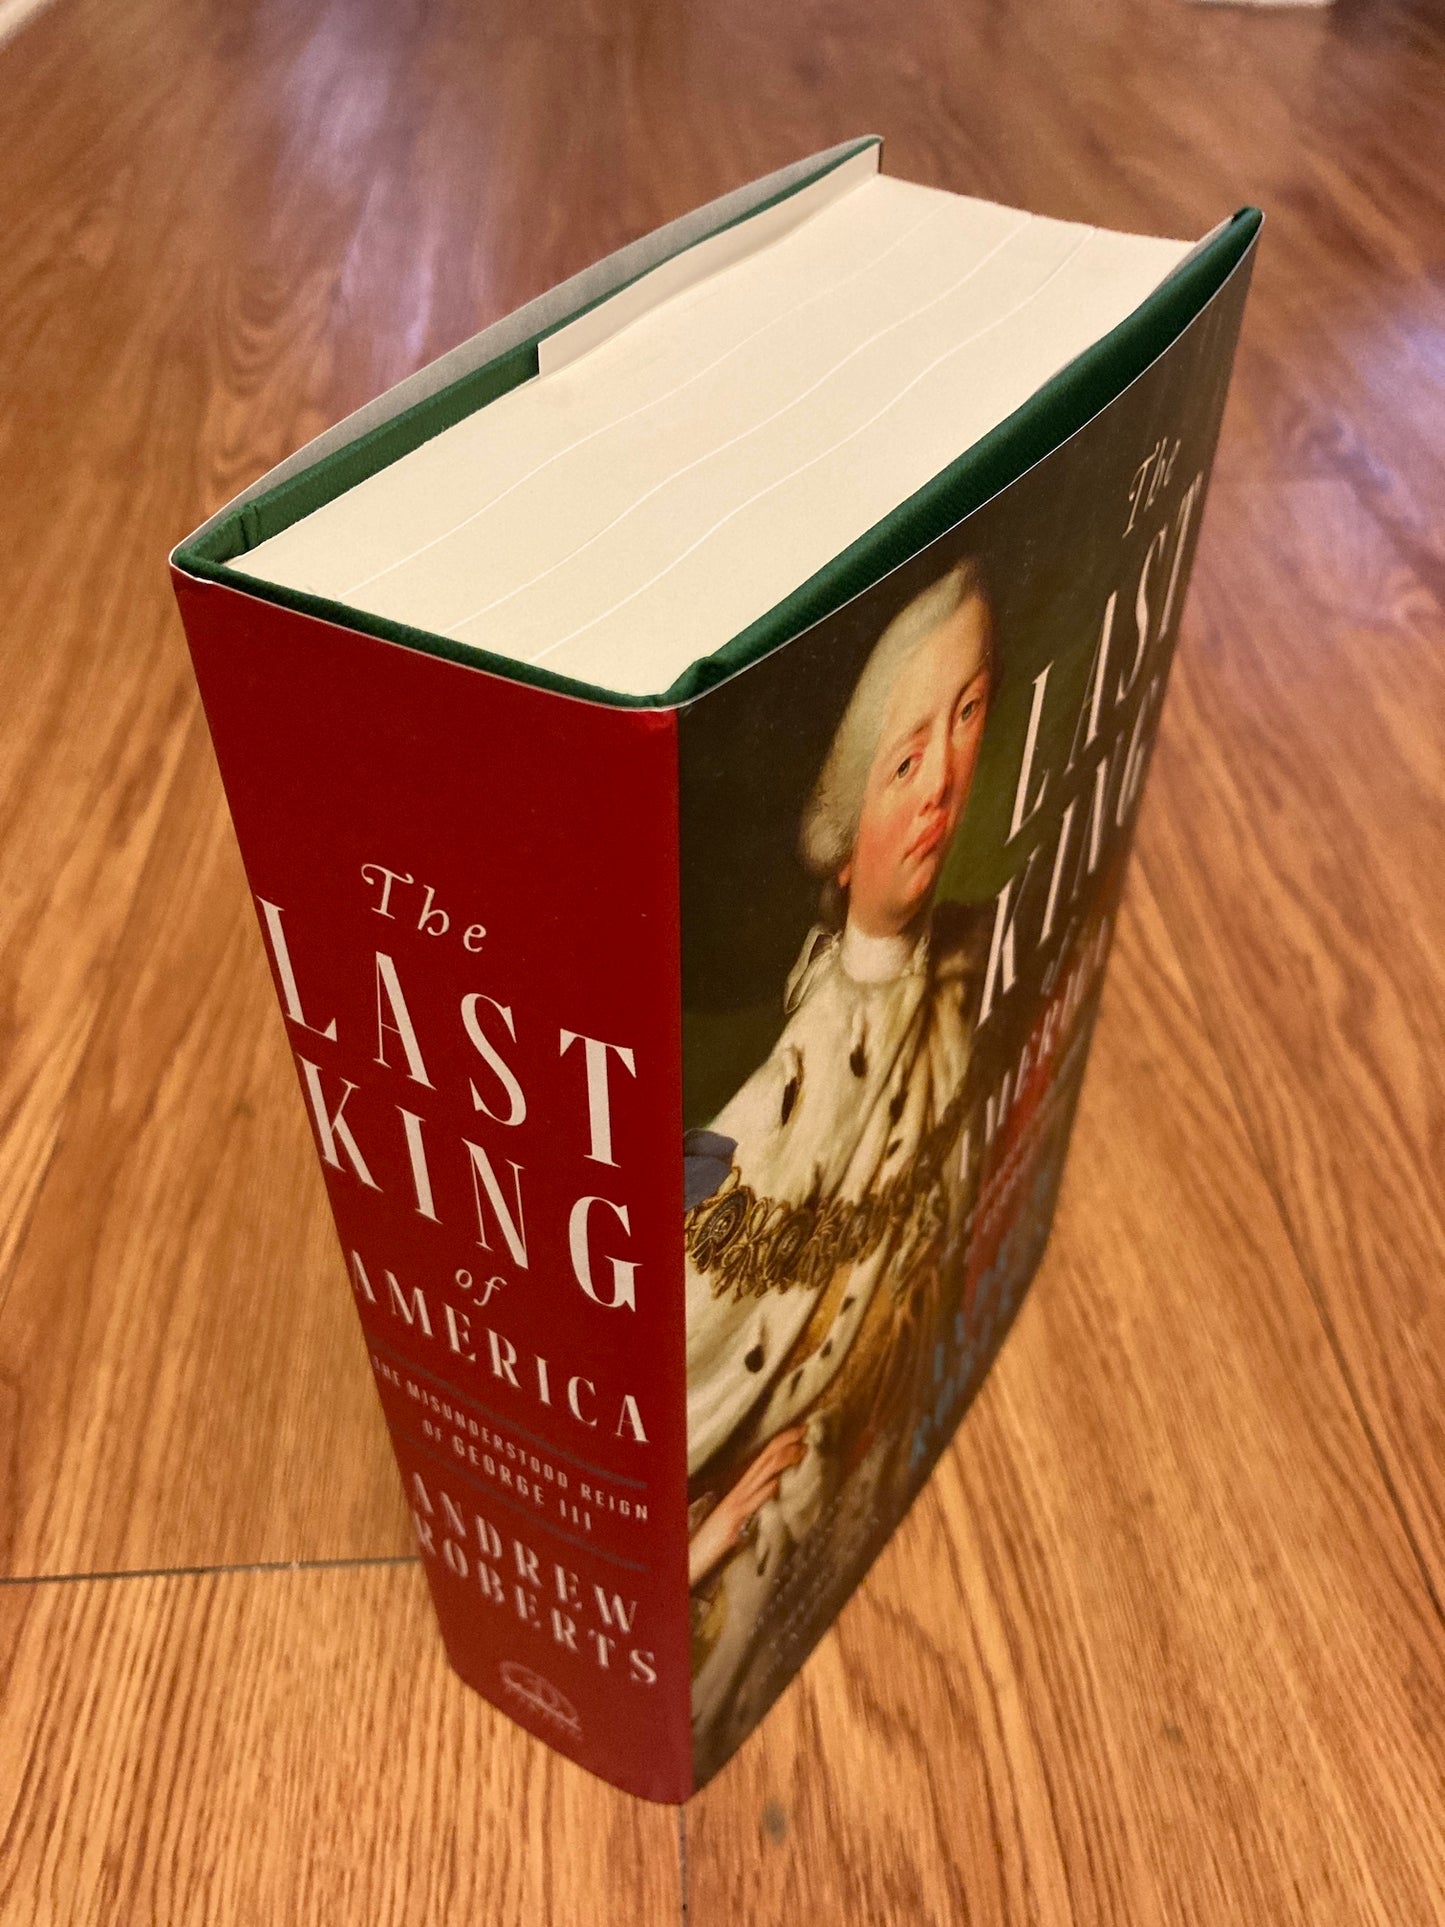 The Last King of America: The Misunderstood Reign of George III